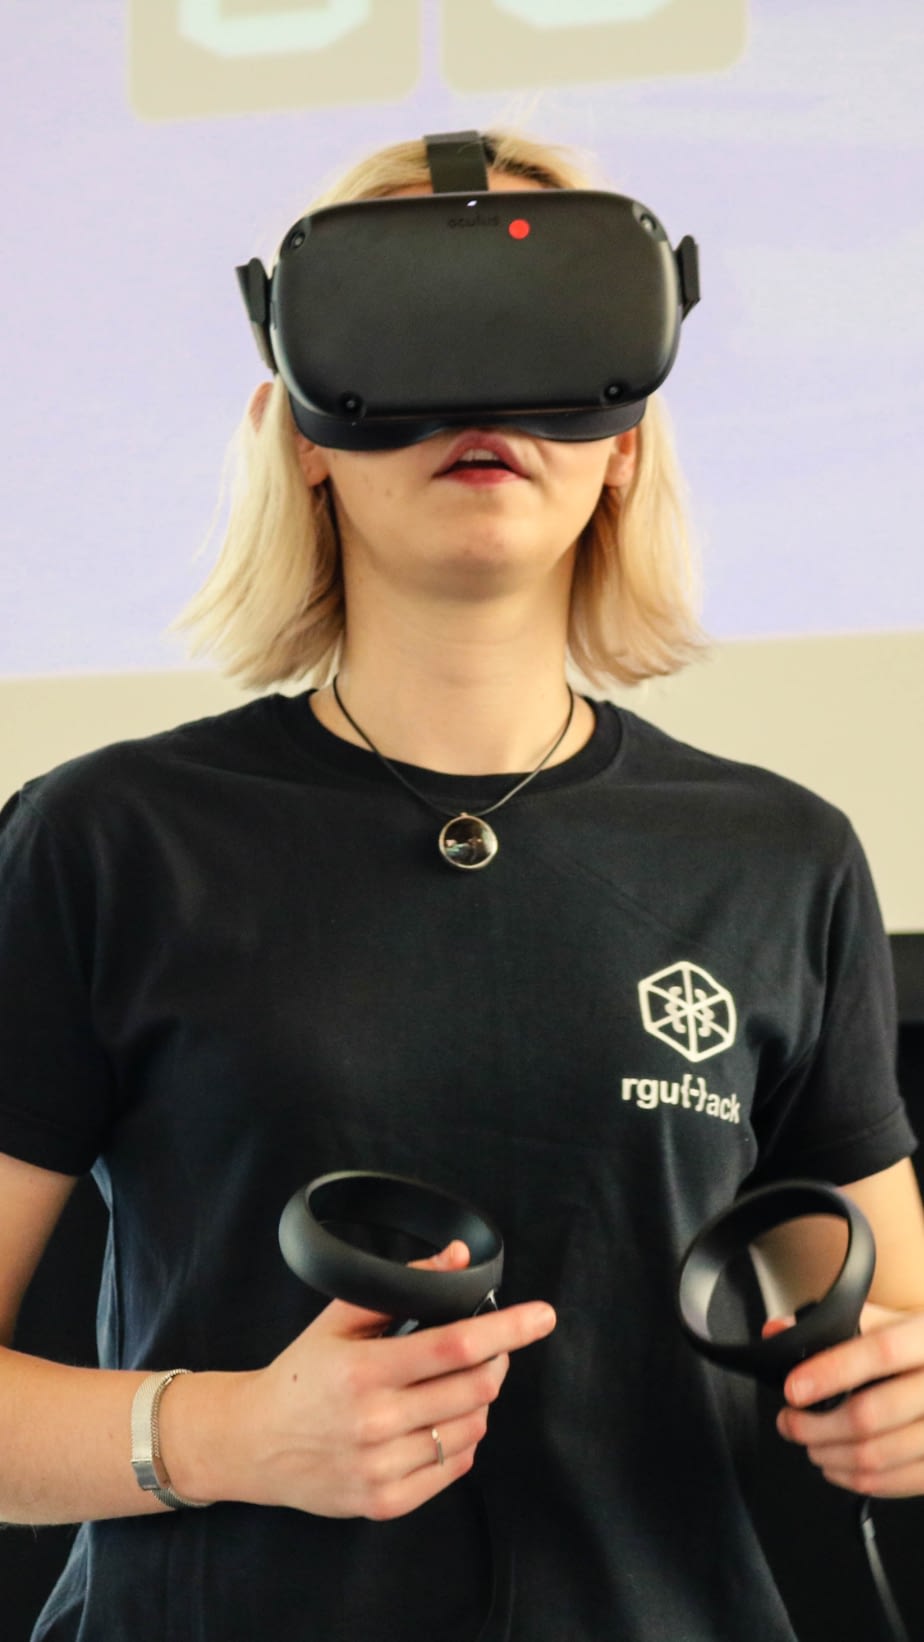 VR Headset at RGU Hack